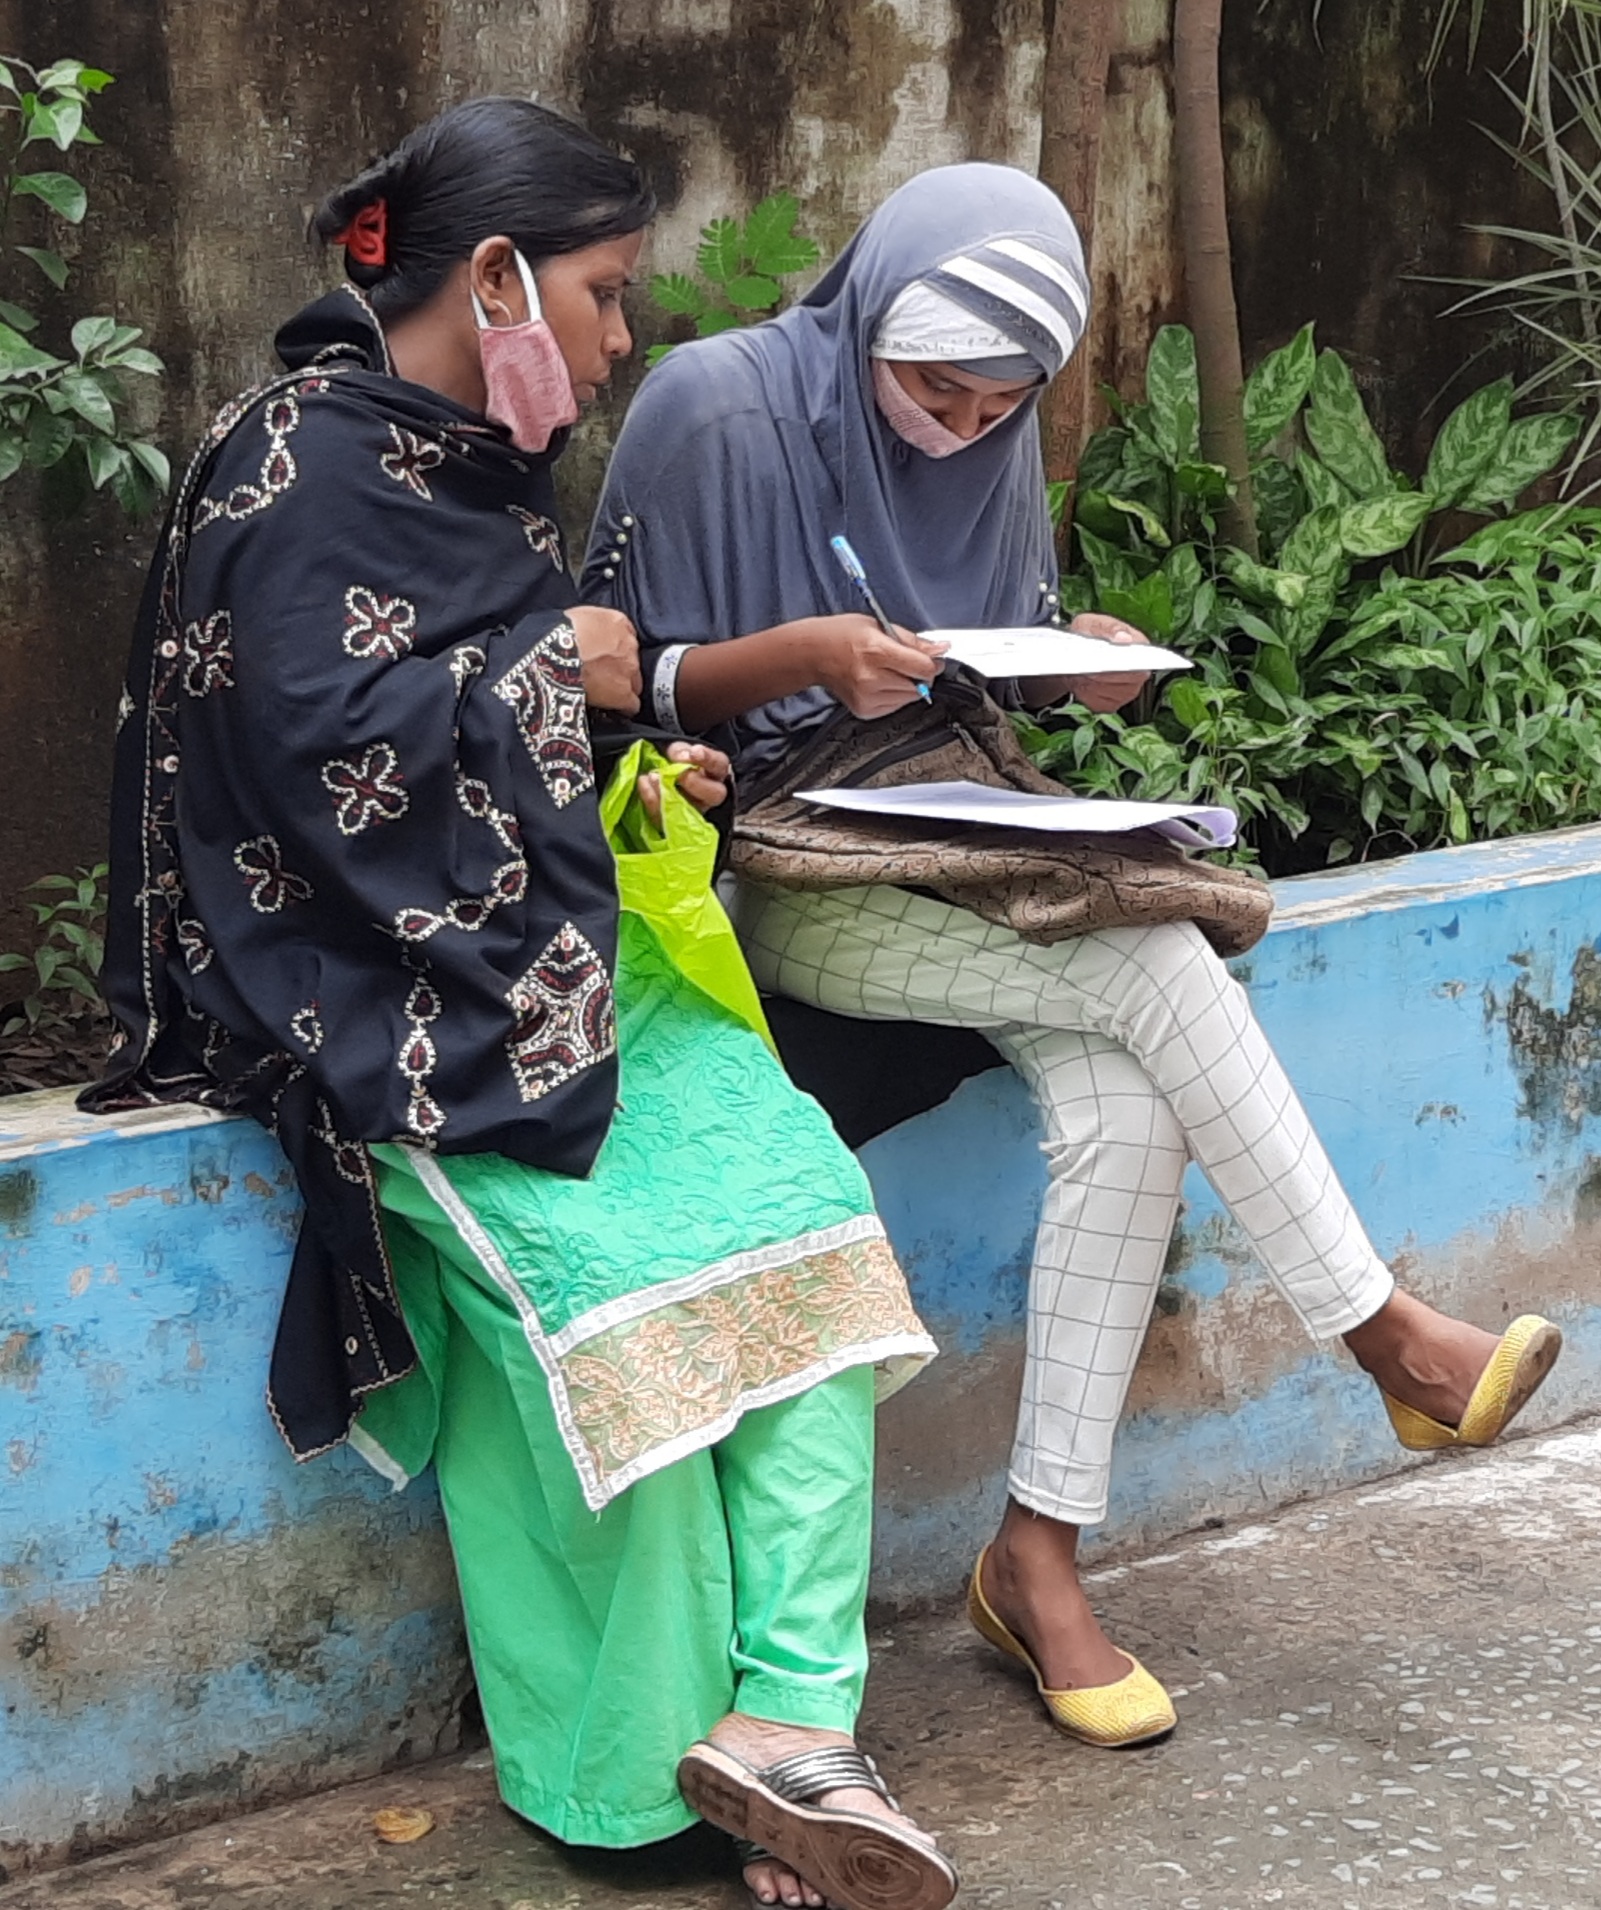 ڈیڑھ مہینے کے بعد مغربی بنگال میں تعلیمی سرگرمیاں دوبارہ بحال